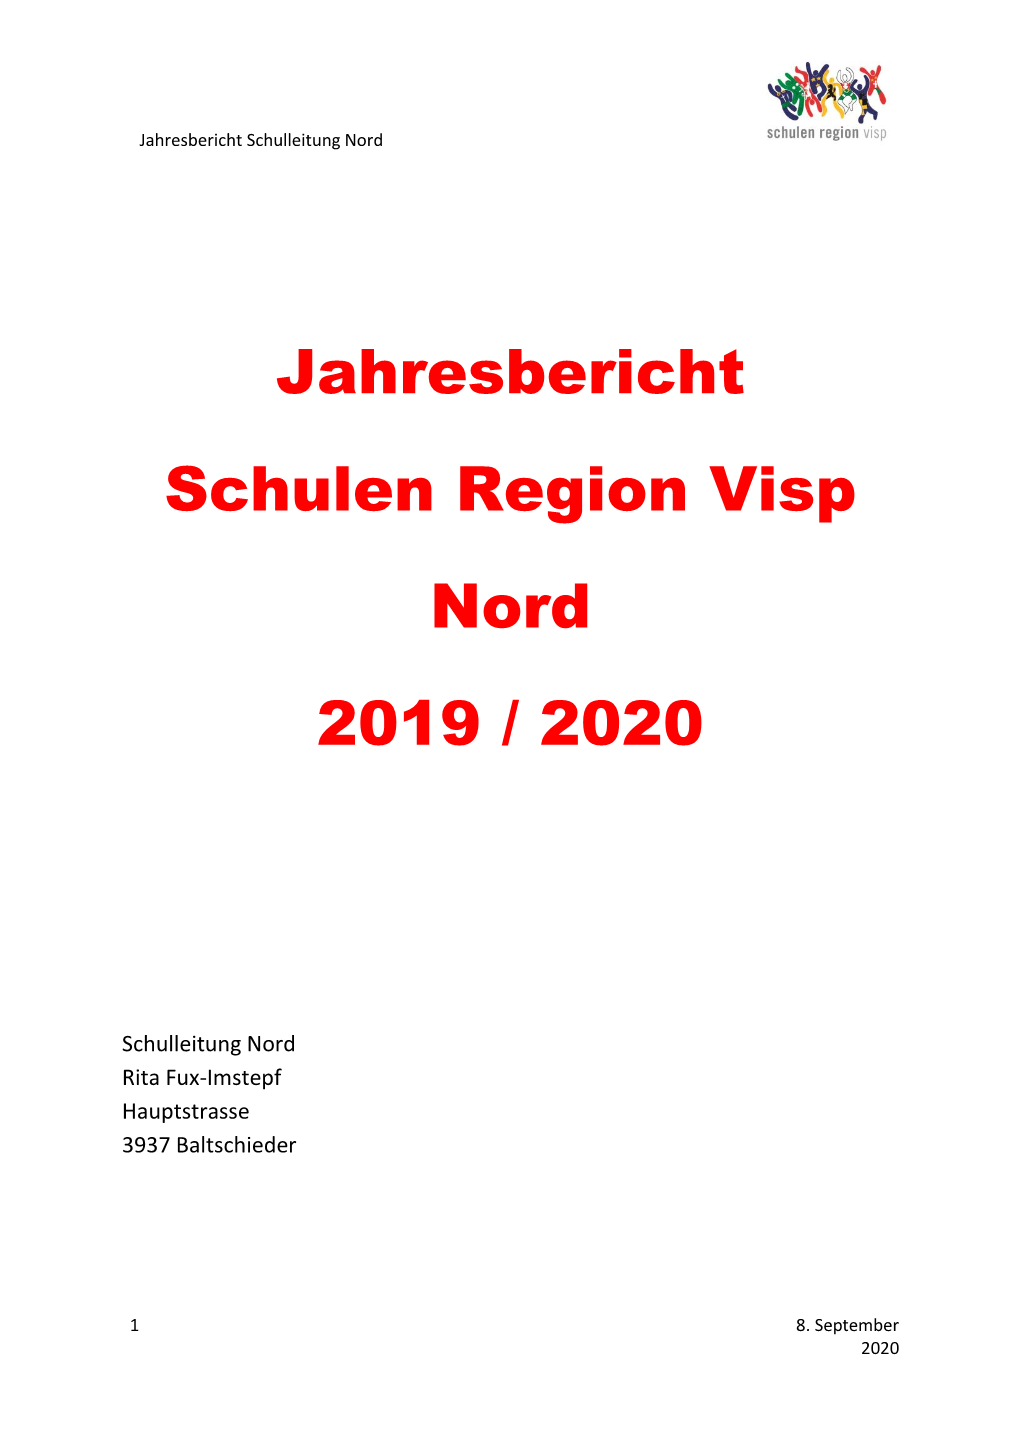 Jahresbericht Schulen Region Visp Nord 2019 / 2020